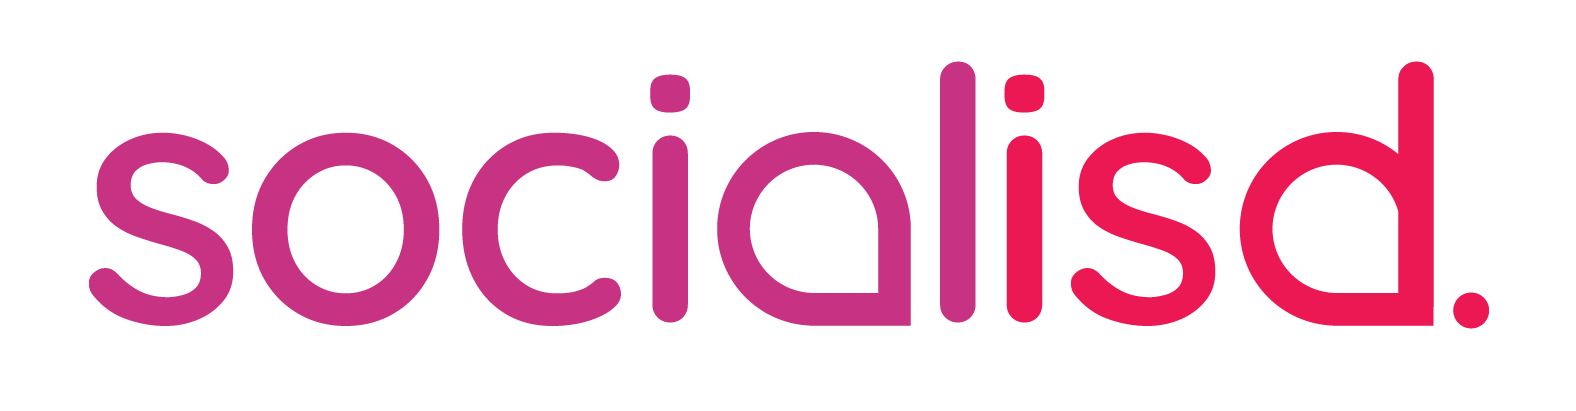 Socialisd logo_colour